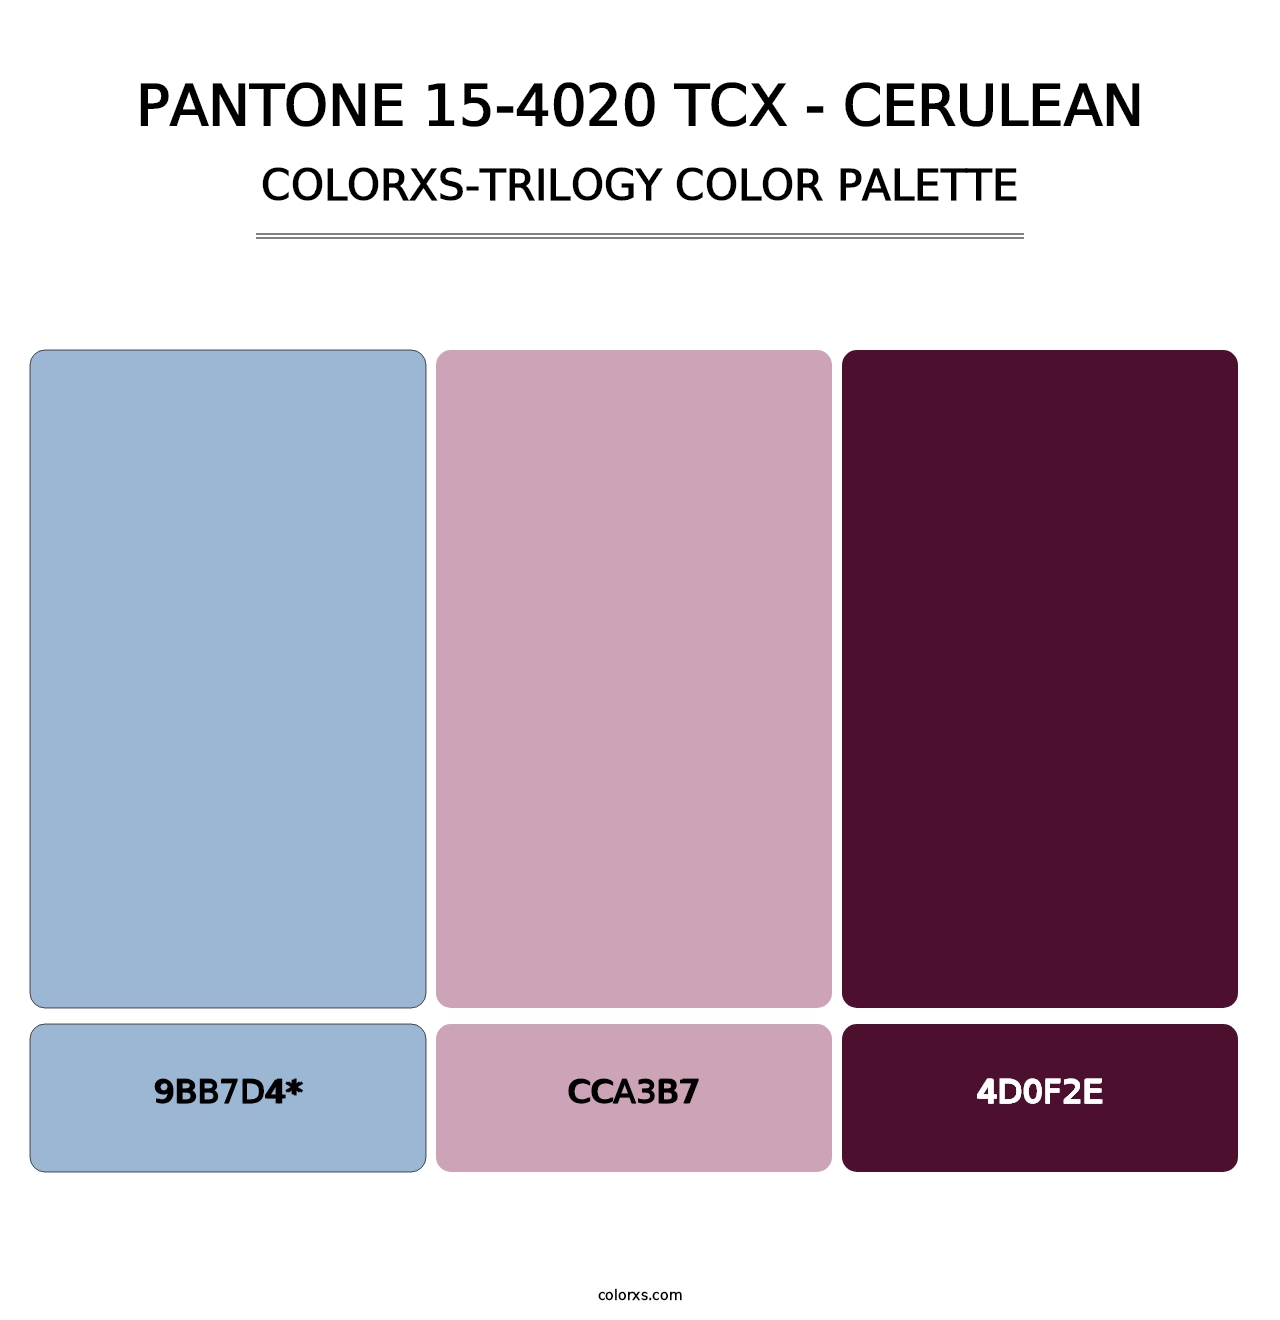 PANTONE 15-4020 TCX - Cerulean - Colorxs Trilogy Palette